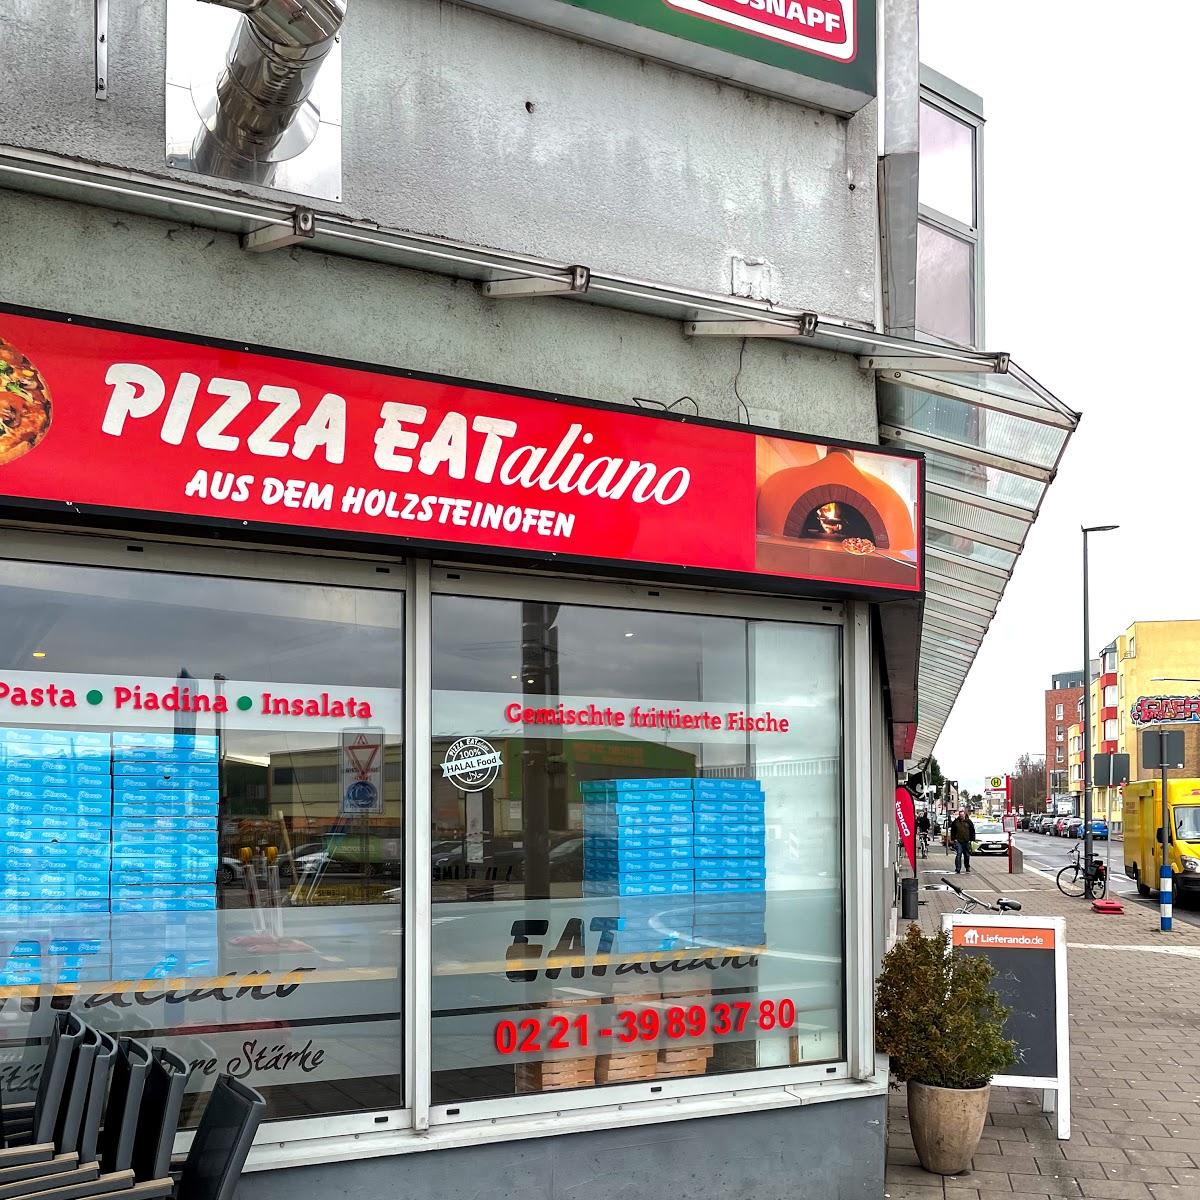 Restaurant "Pizza EATaliano Holzsteinofen - Pizza, Pasta in  Südstadt" in Köln